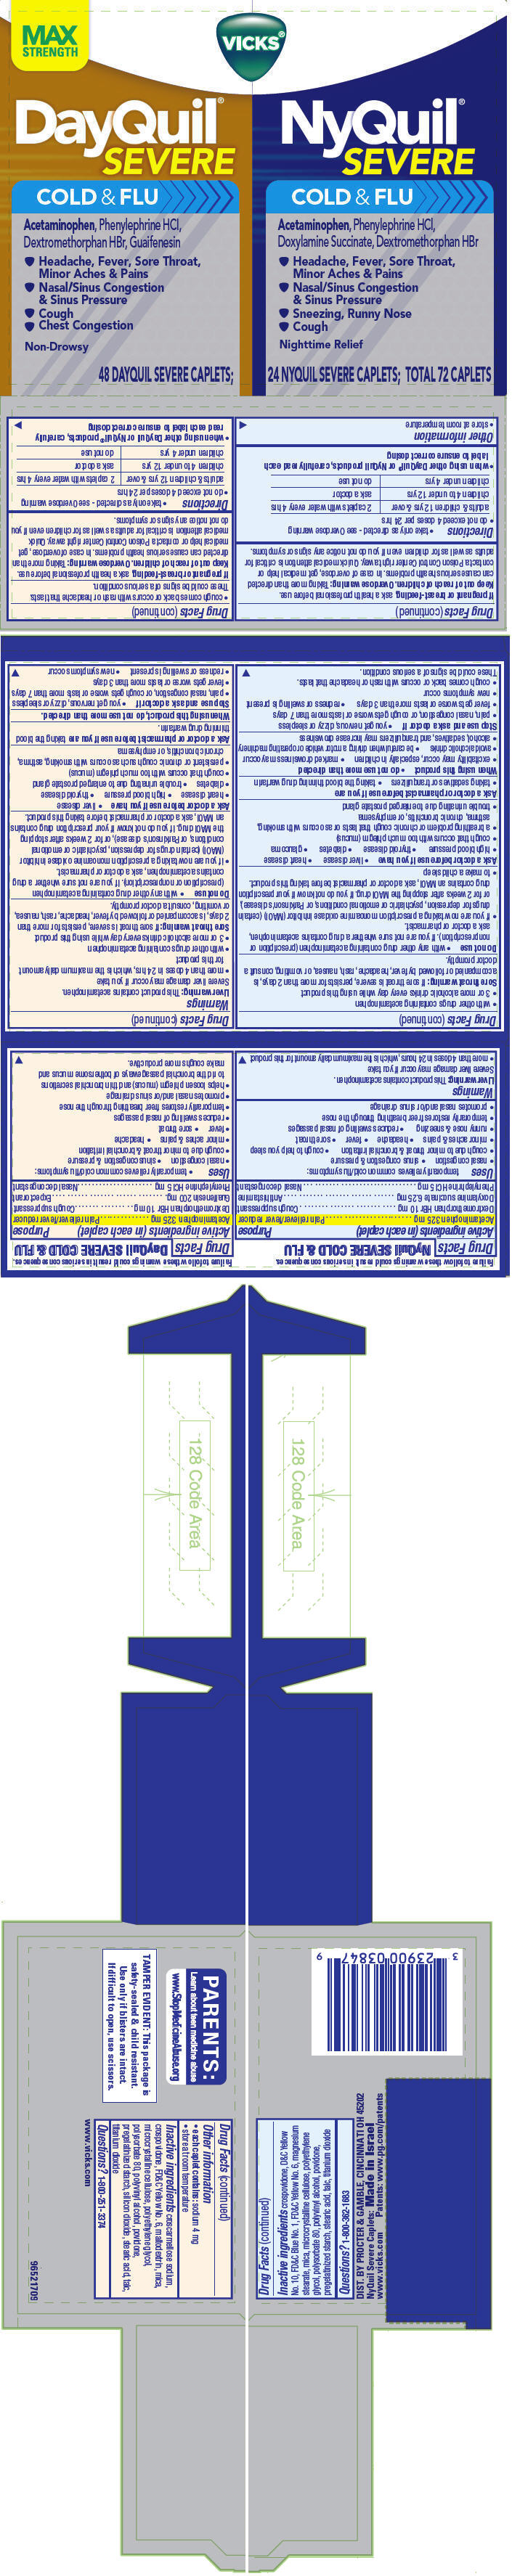 PRINCIPAL DISPLAY PANEL - 72 Caplet Kit Carton